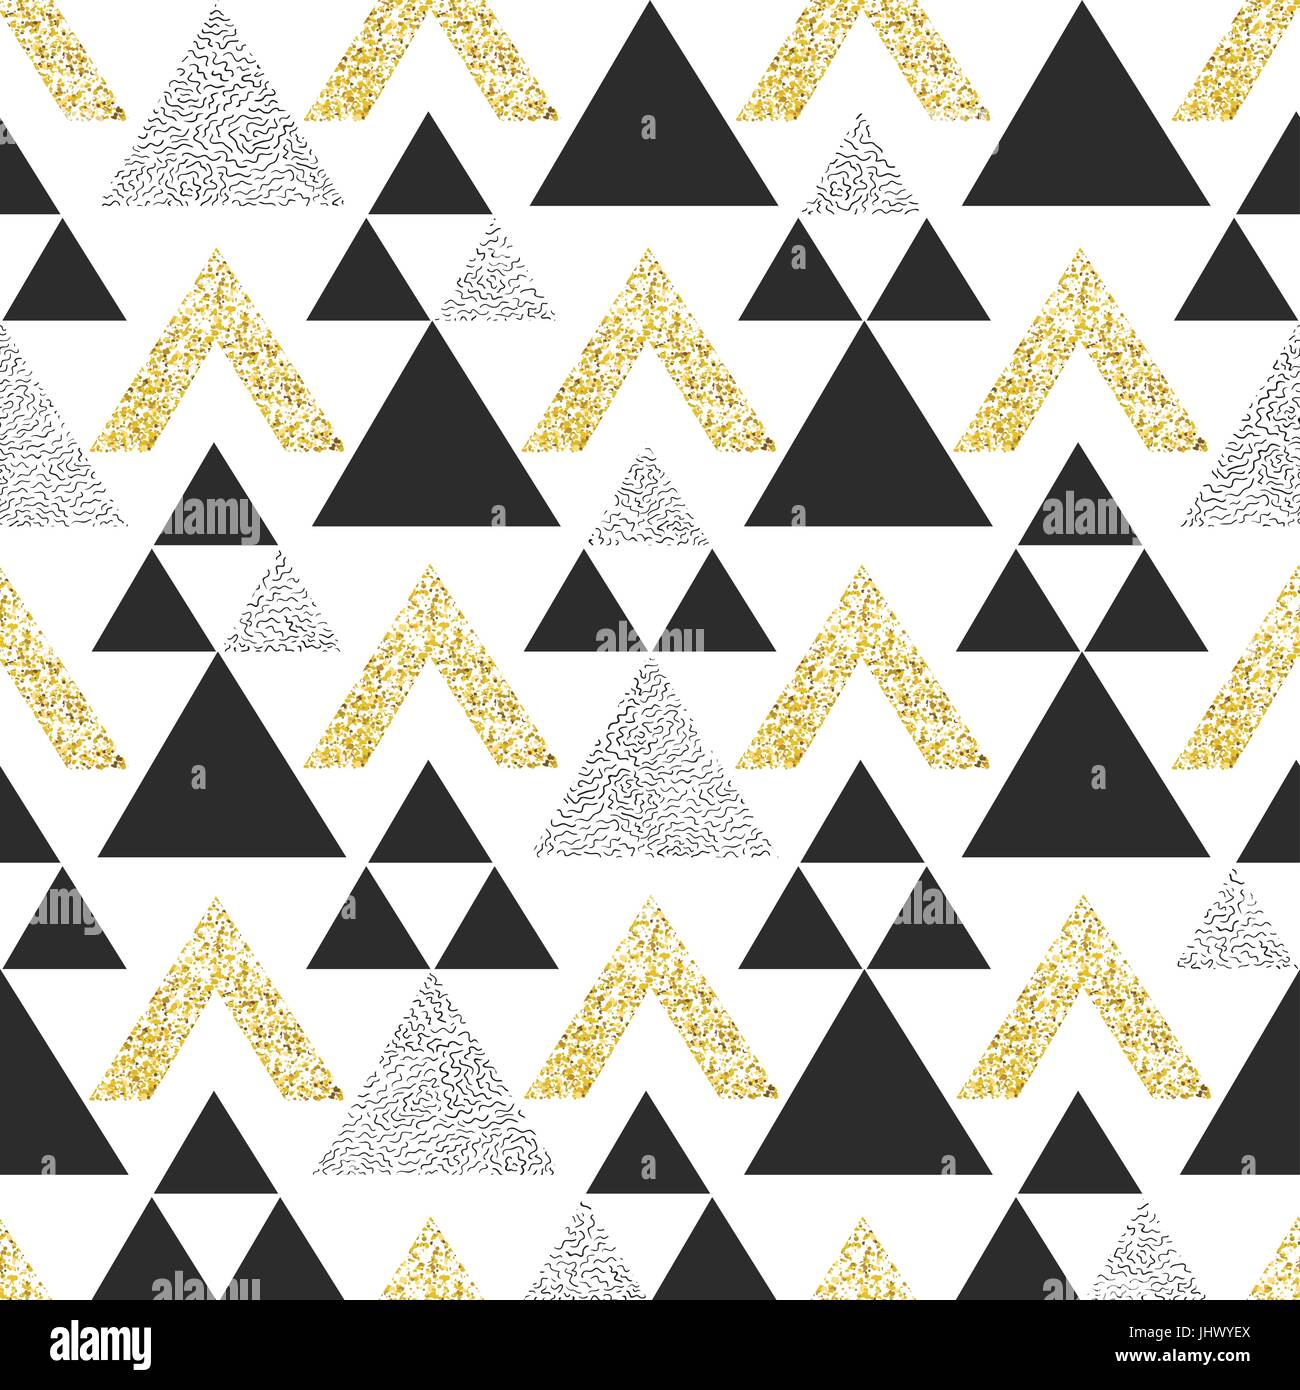 Oro triángulo geométrico de fondo. Resumen patrón sin fisuras con triángulos en oro y gris oscuro. Ilustración del Vector